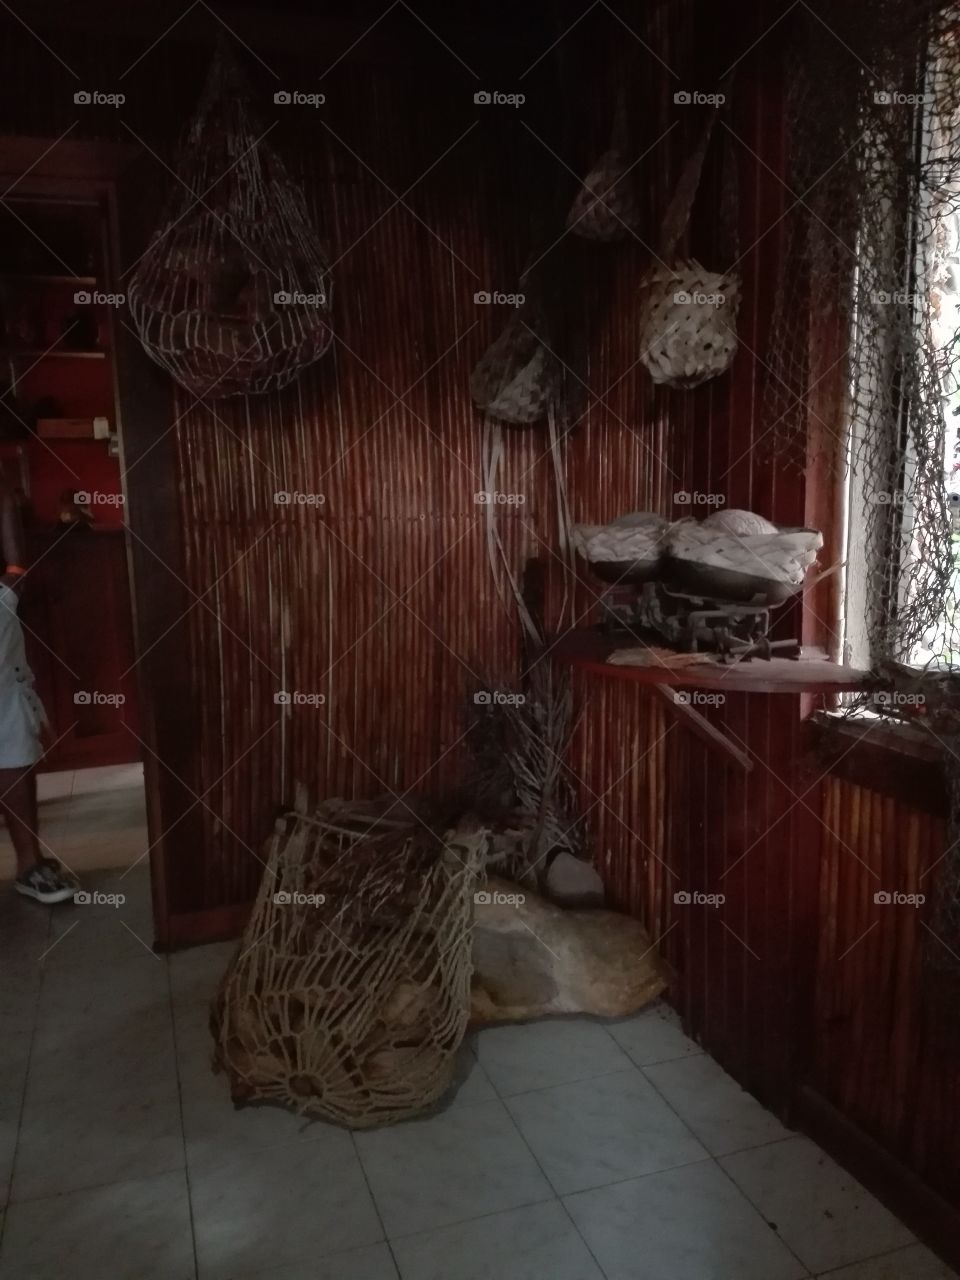 artesanias elaboradas en palma museo cueva de morgan